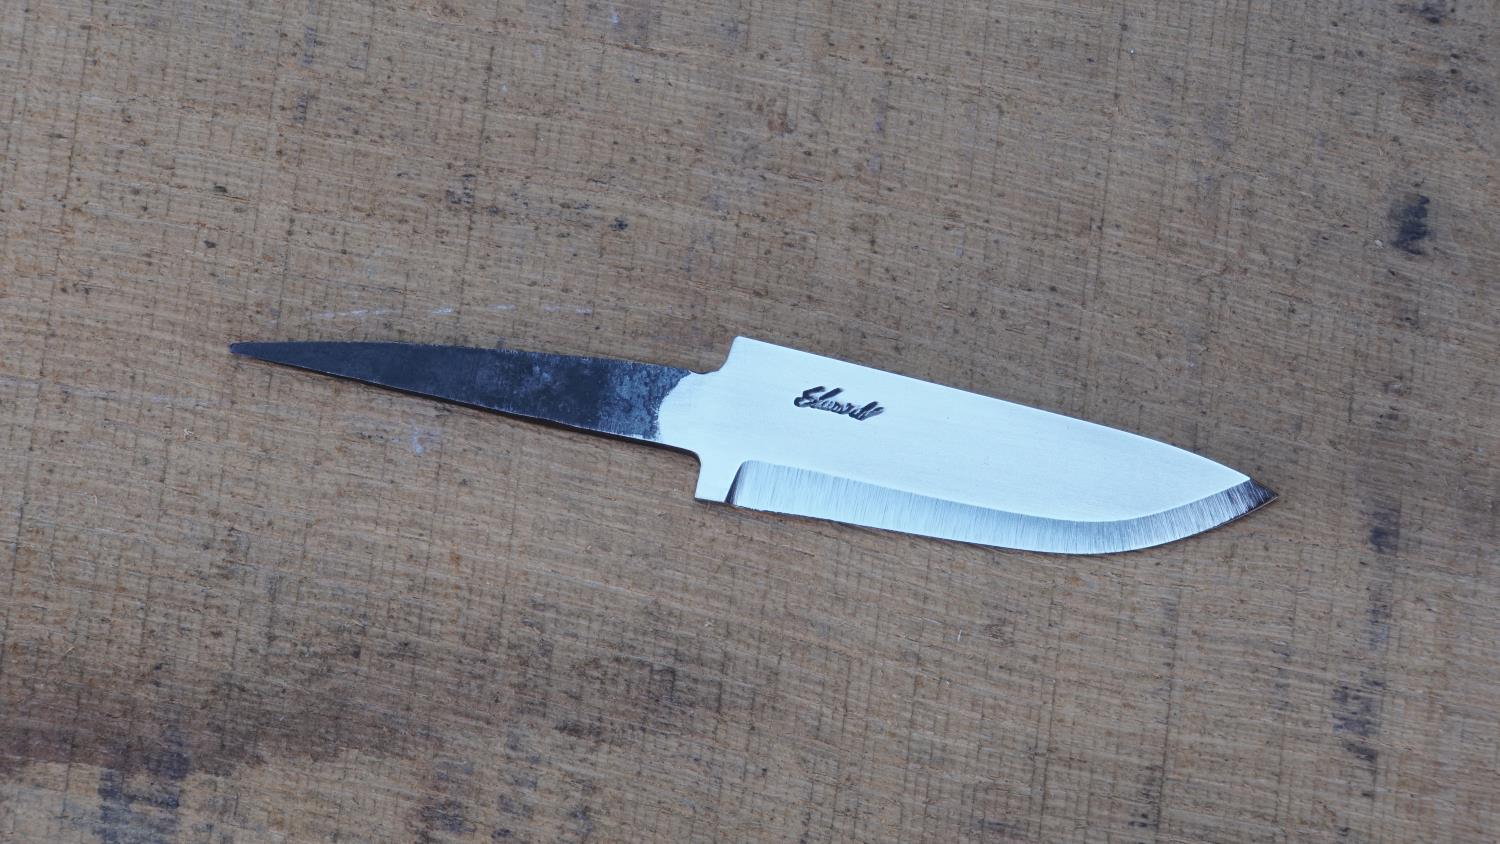 Knivblad med "drop", blank 30-70 mm